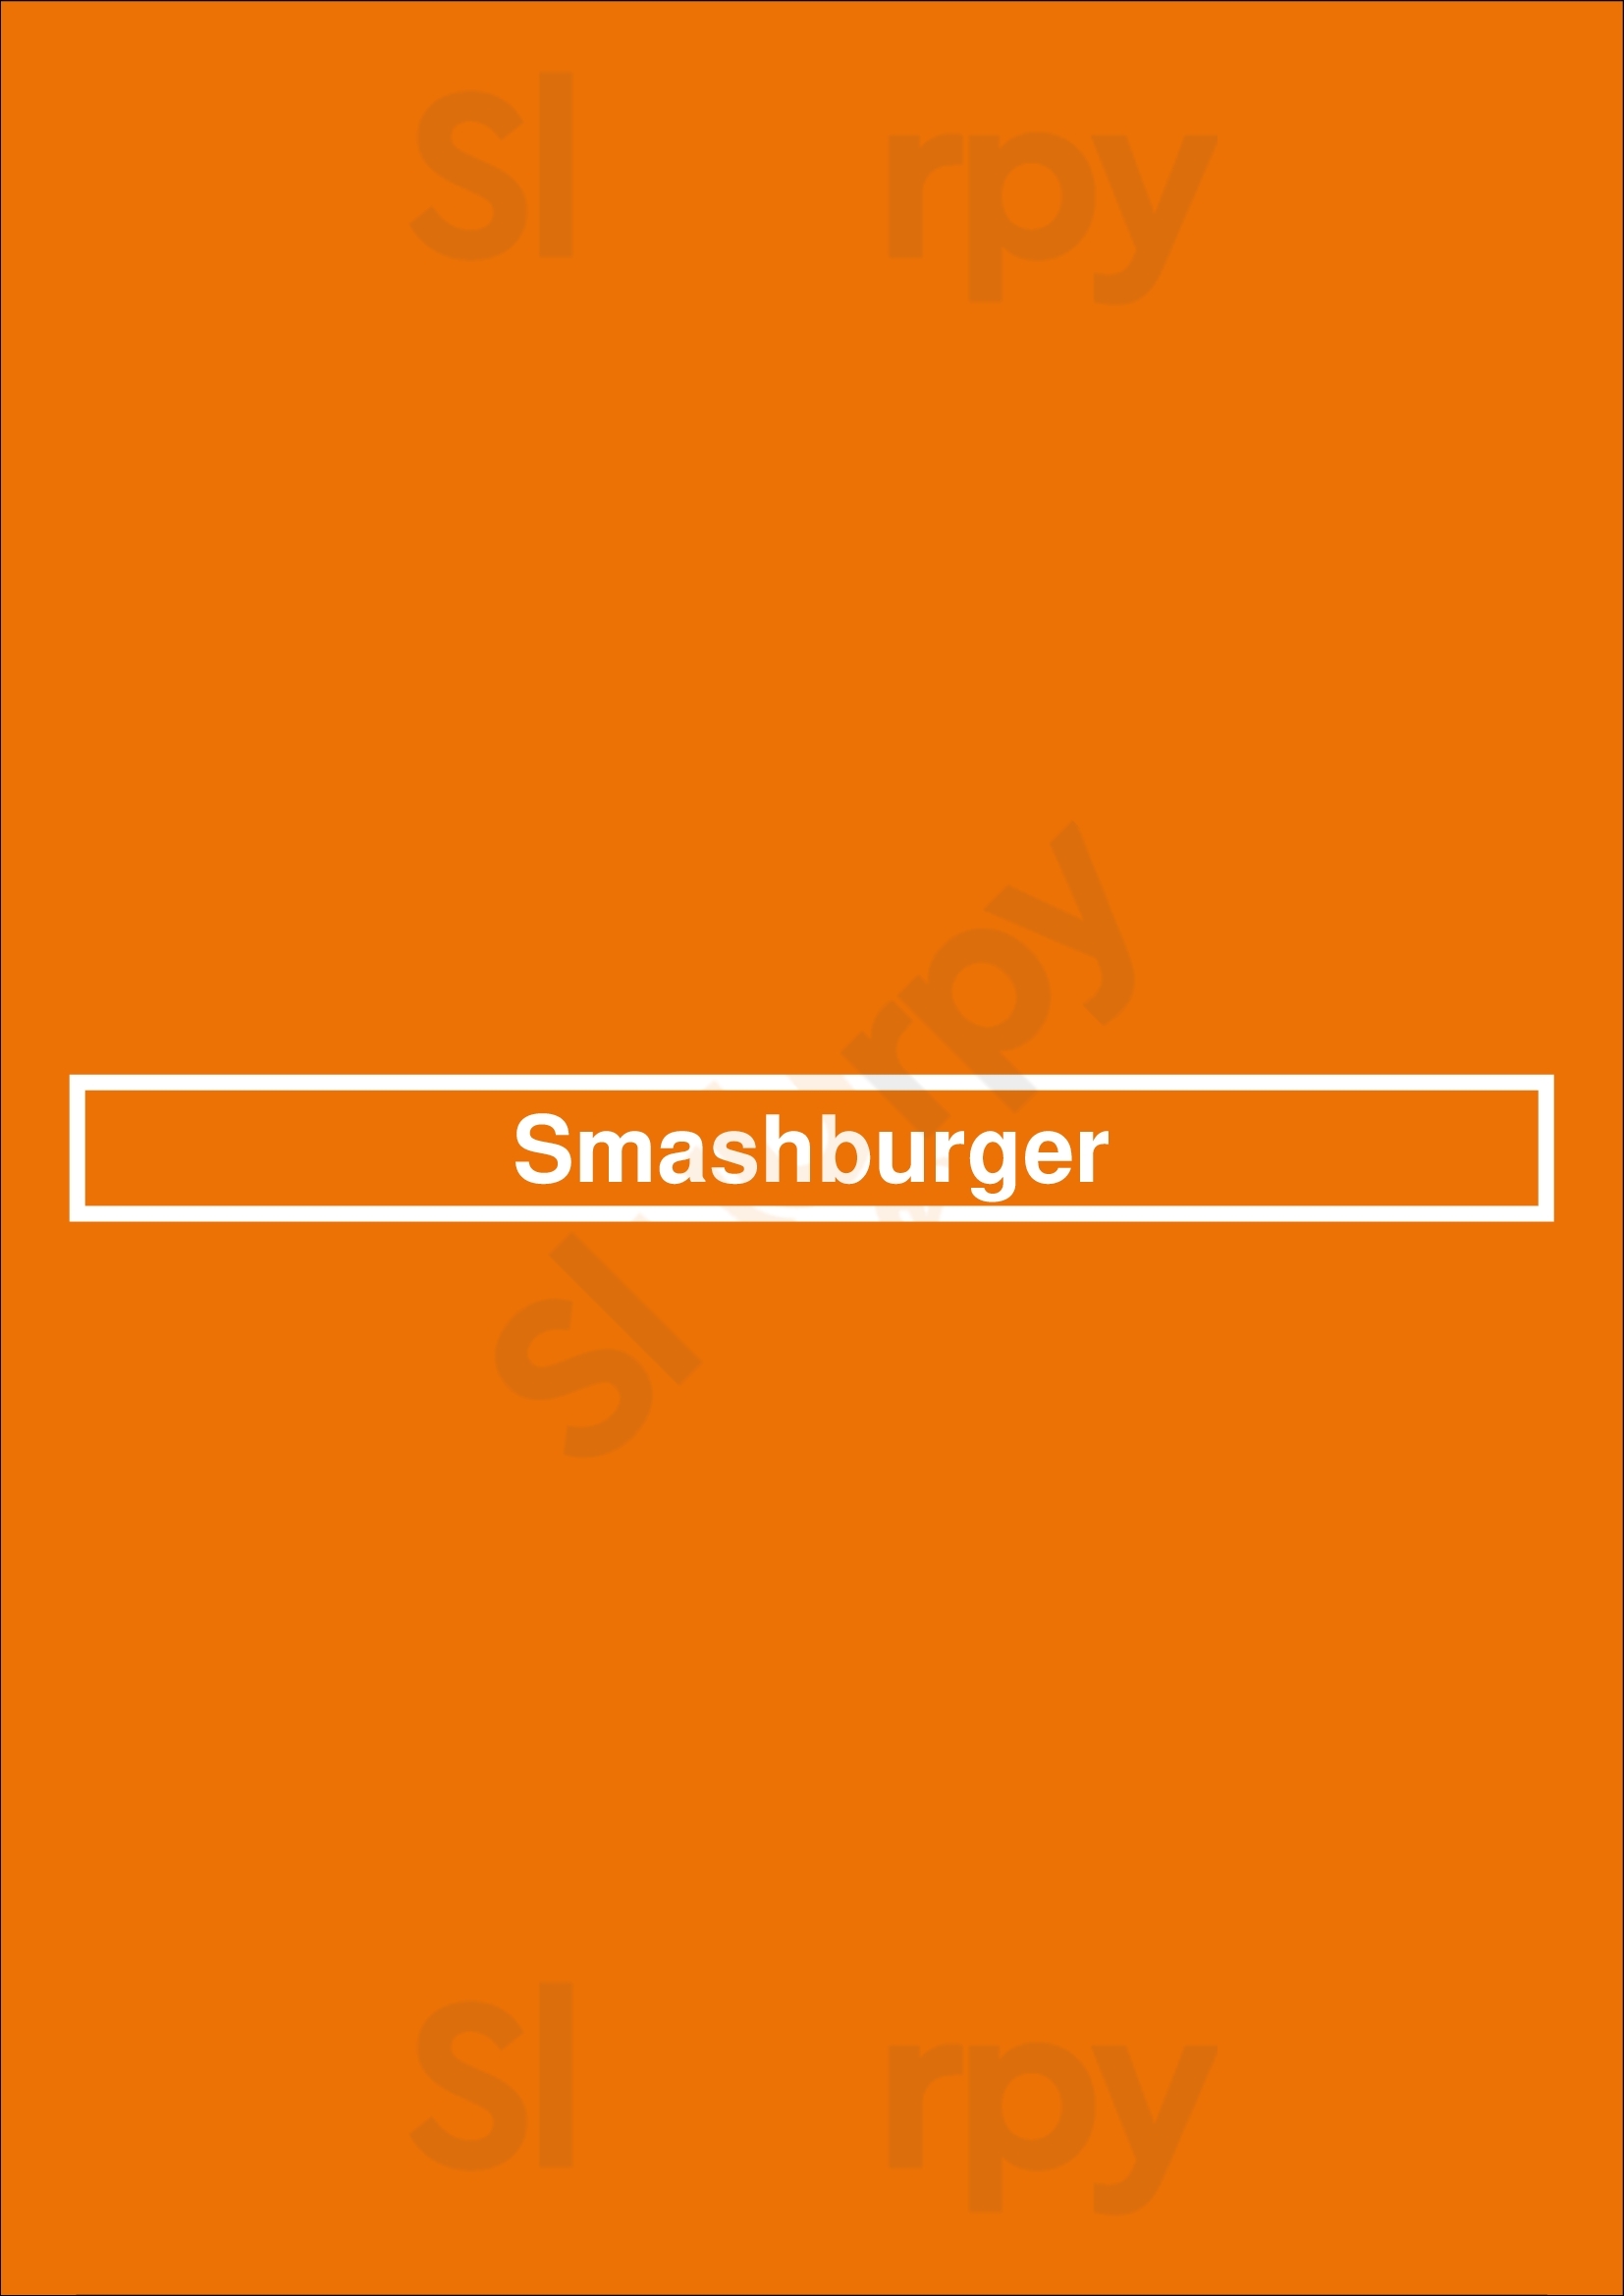 Smashburger Lakewood Menu - 1